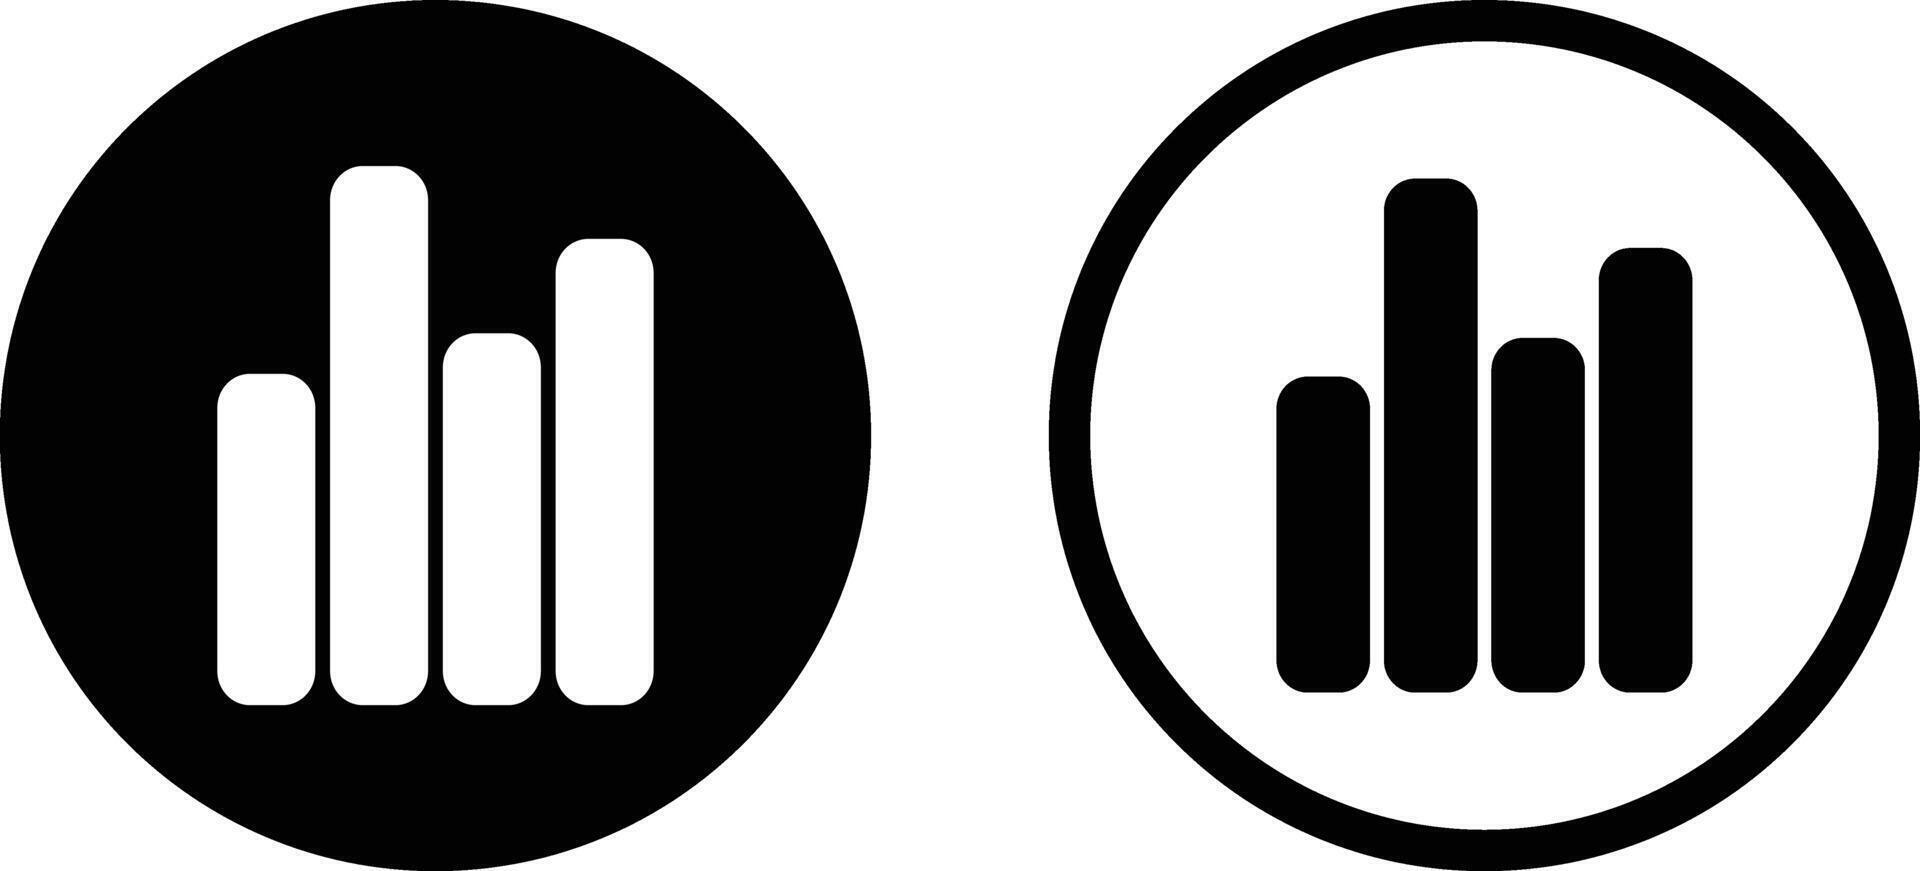 analys ikon i två stilar isolerat på vit bakgrund . vektor illustration